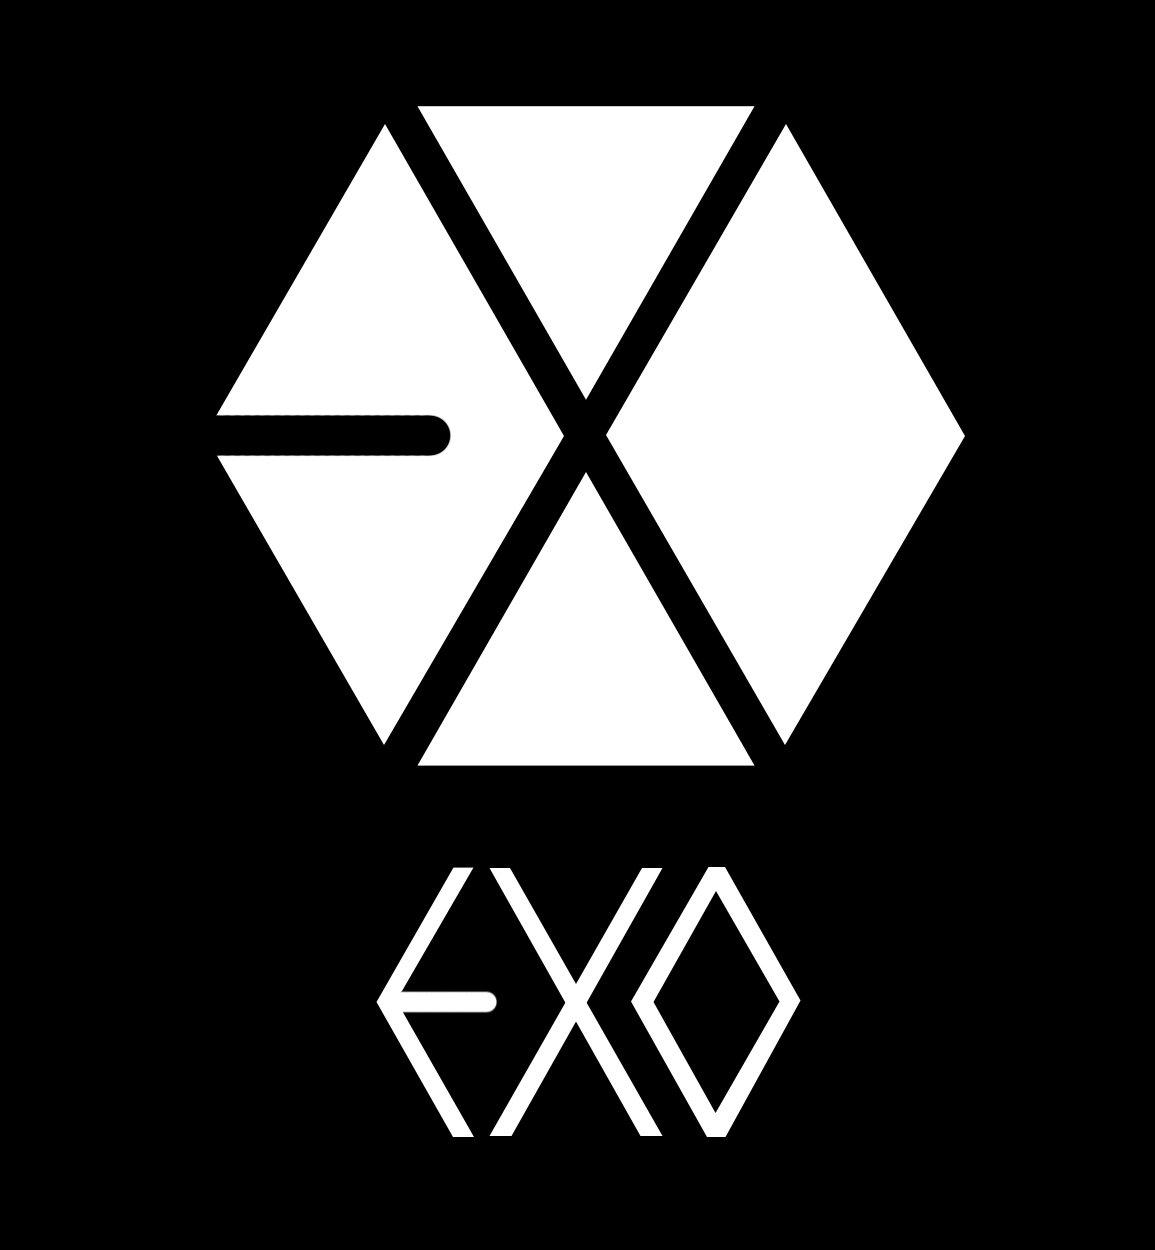 Hãy khám phá hình ảnh liên quan đến biểu tượng của EXO, một nhóm nhạc hàng đầu của Hàn Quốc! Biểu tượng của họ là một kiệt tác thiết kế đầy sáng tạo và tượng trưng cho sự đoàn kết của những thành viên trong ban nhạc này. Đừng bỏ lỡ cơ hội để ngắm nhìn logo lung linh này!